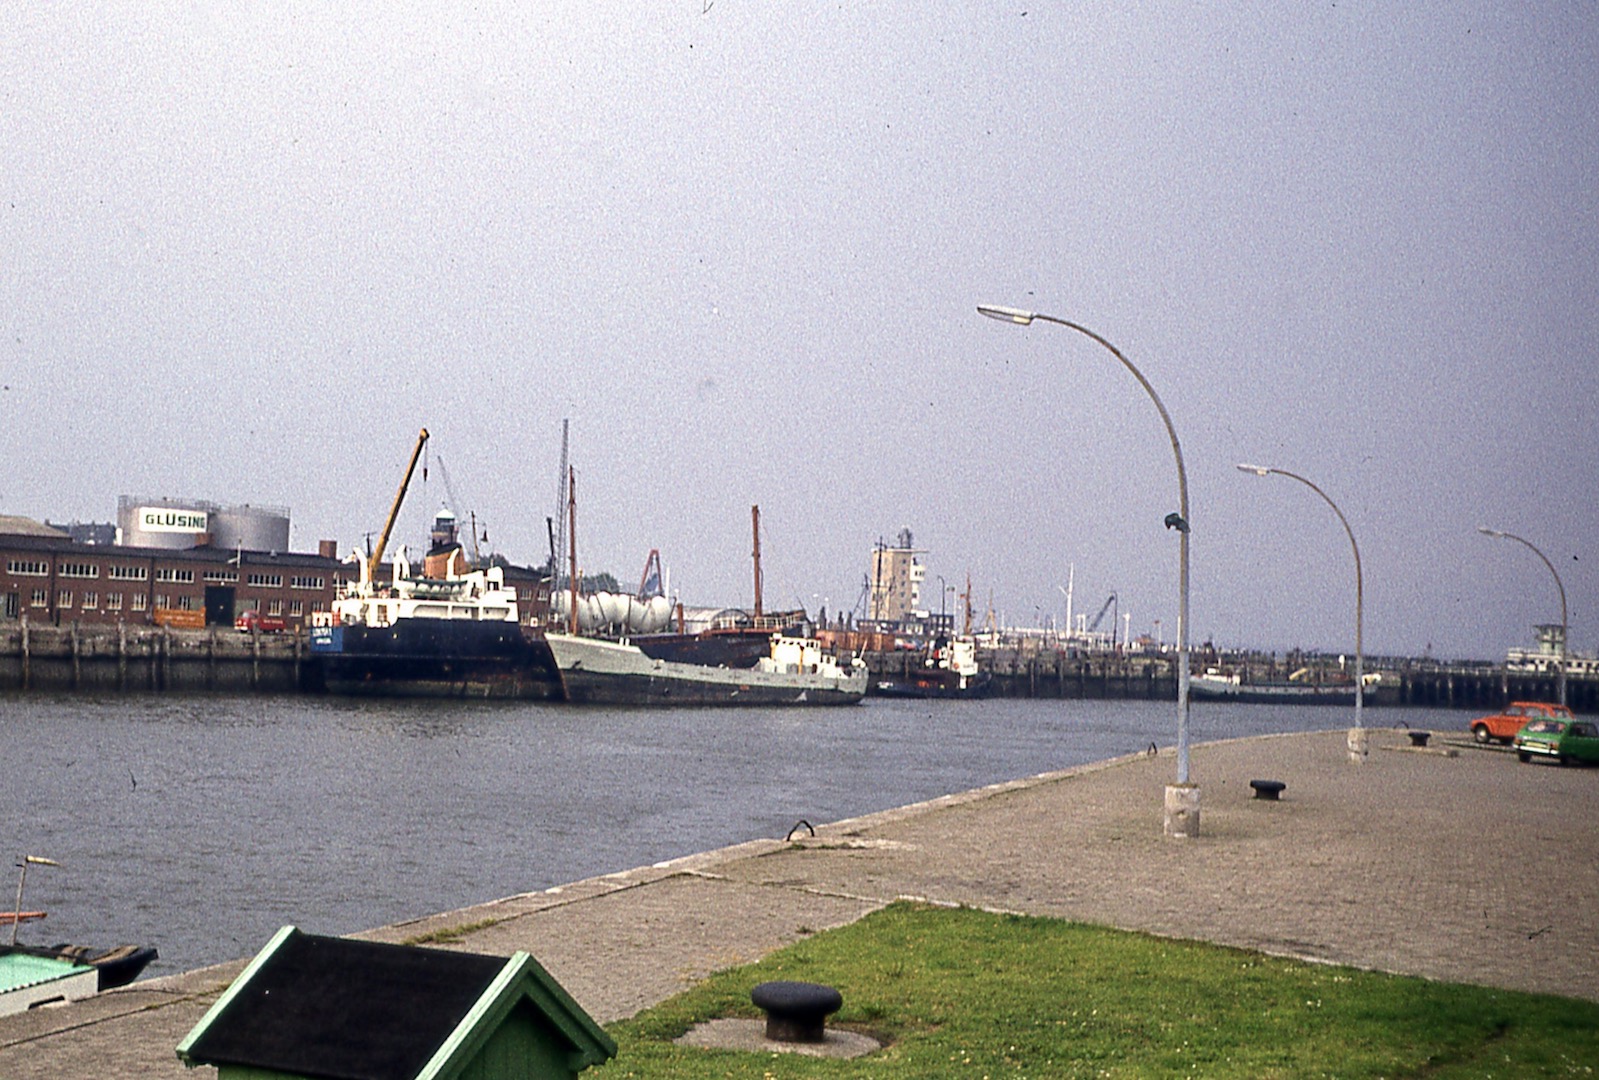 Mijn eerste scheepje, de Michel S, in 1977 buitenop bij een groter schip in Cuxhaven.